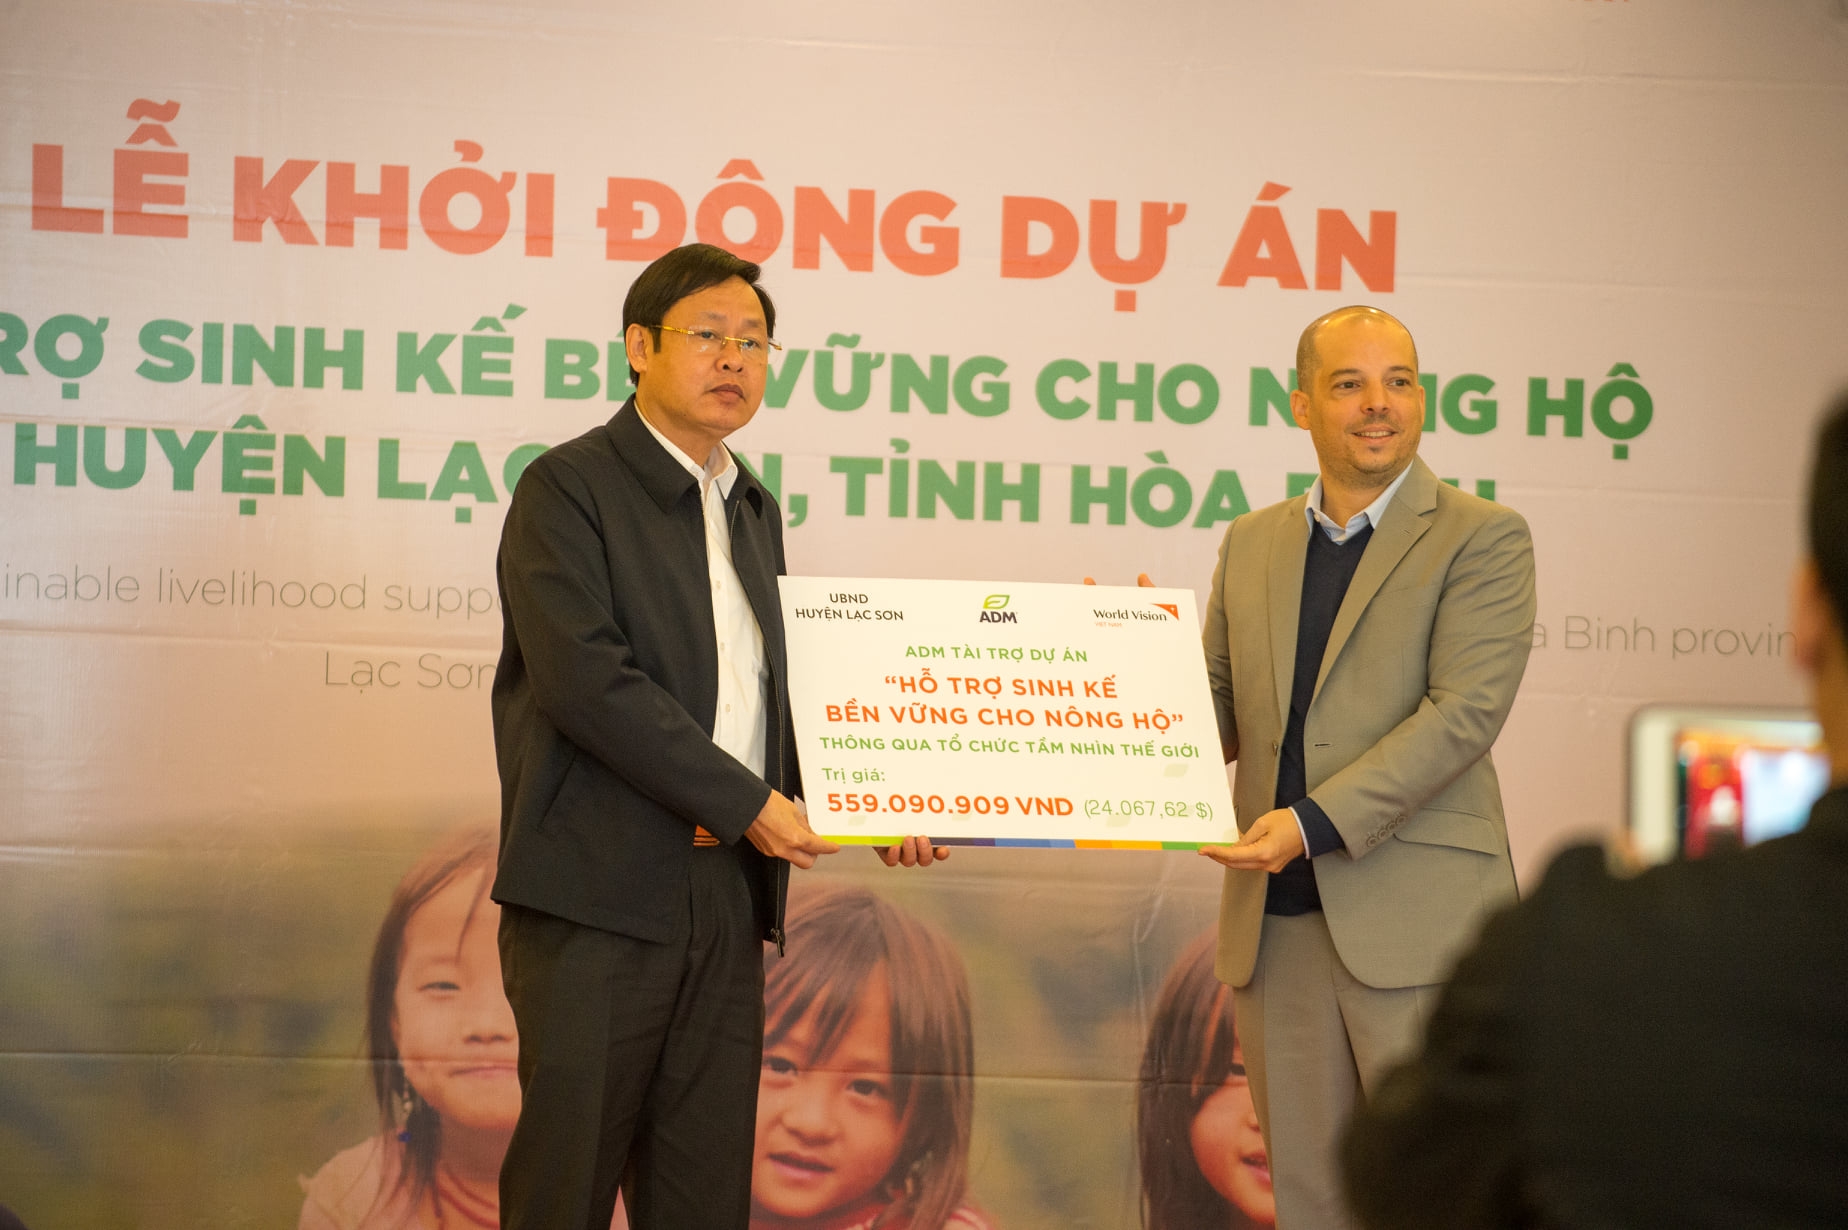 Sustainable livelihoods support for smallholder farmer in Hoa Binh